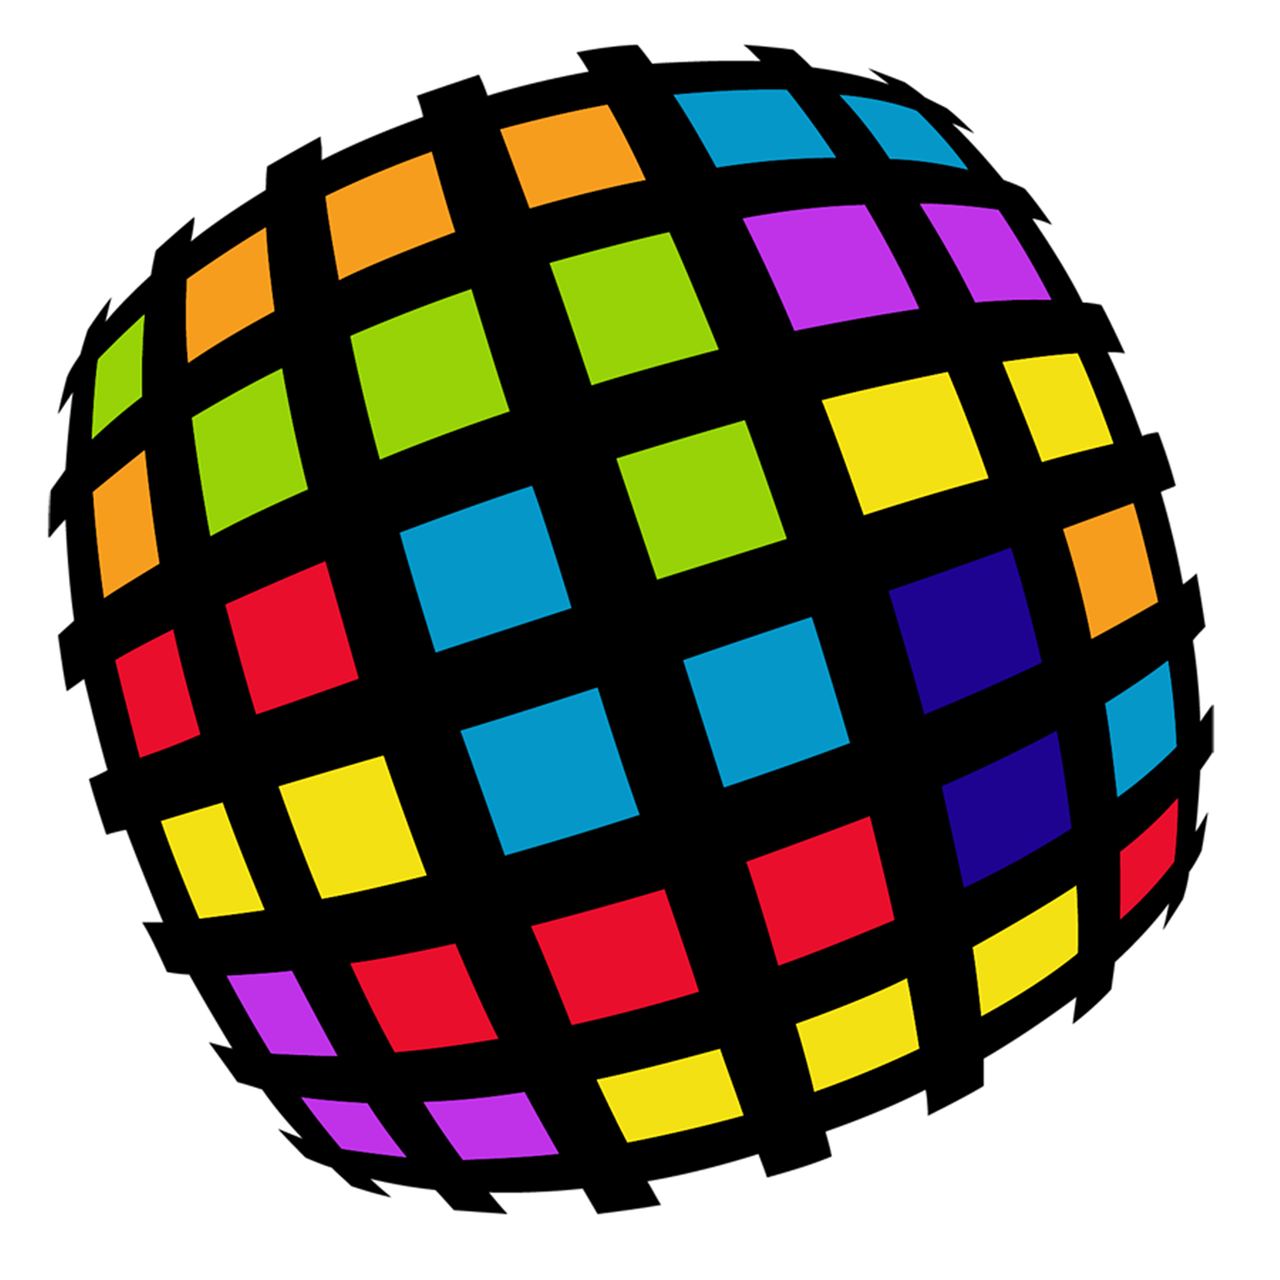 multi-colored rubics cube button free photo